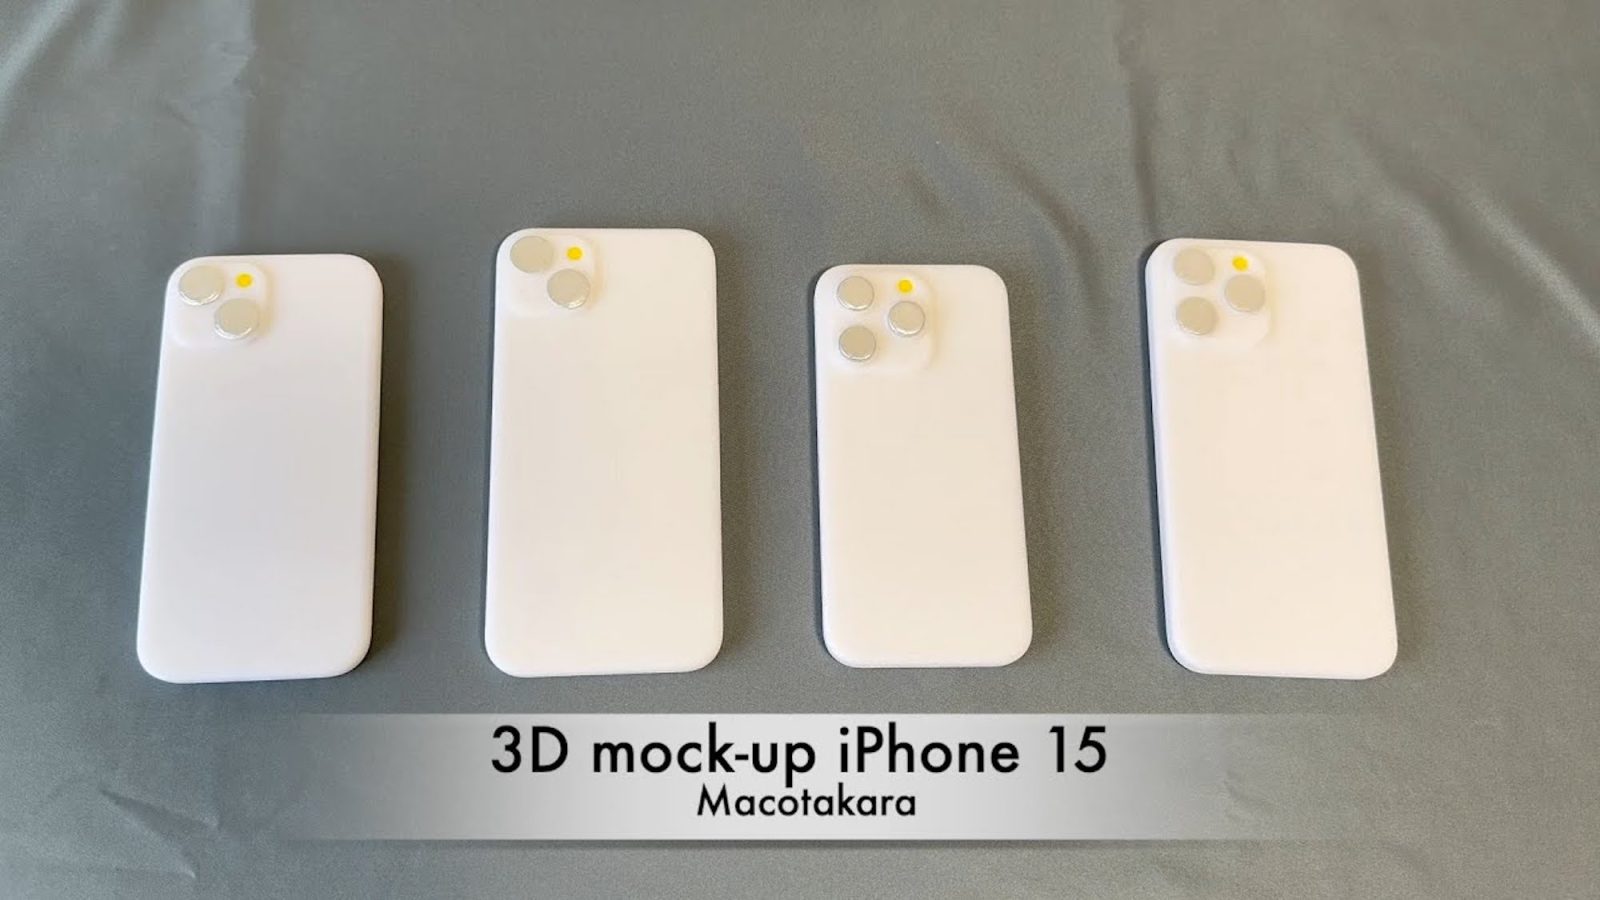 Il video mostra moduli fittizi per iPhone 15 stampati in 3D e verifica la compatibilità con le custodie per iPhone 14